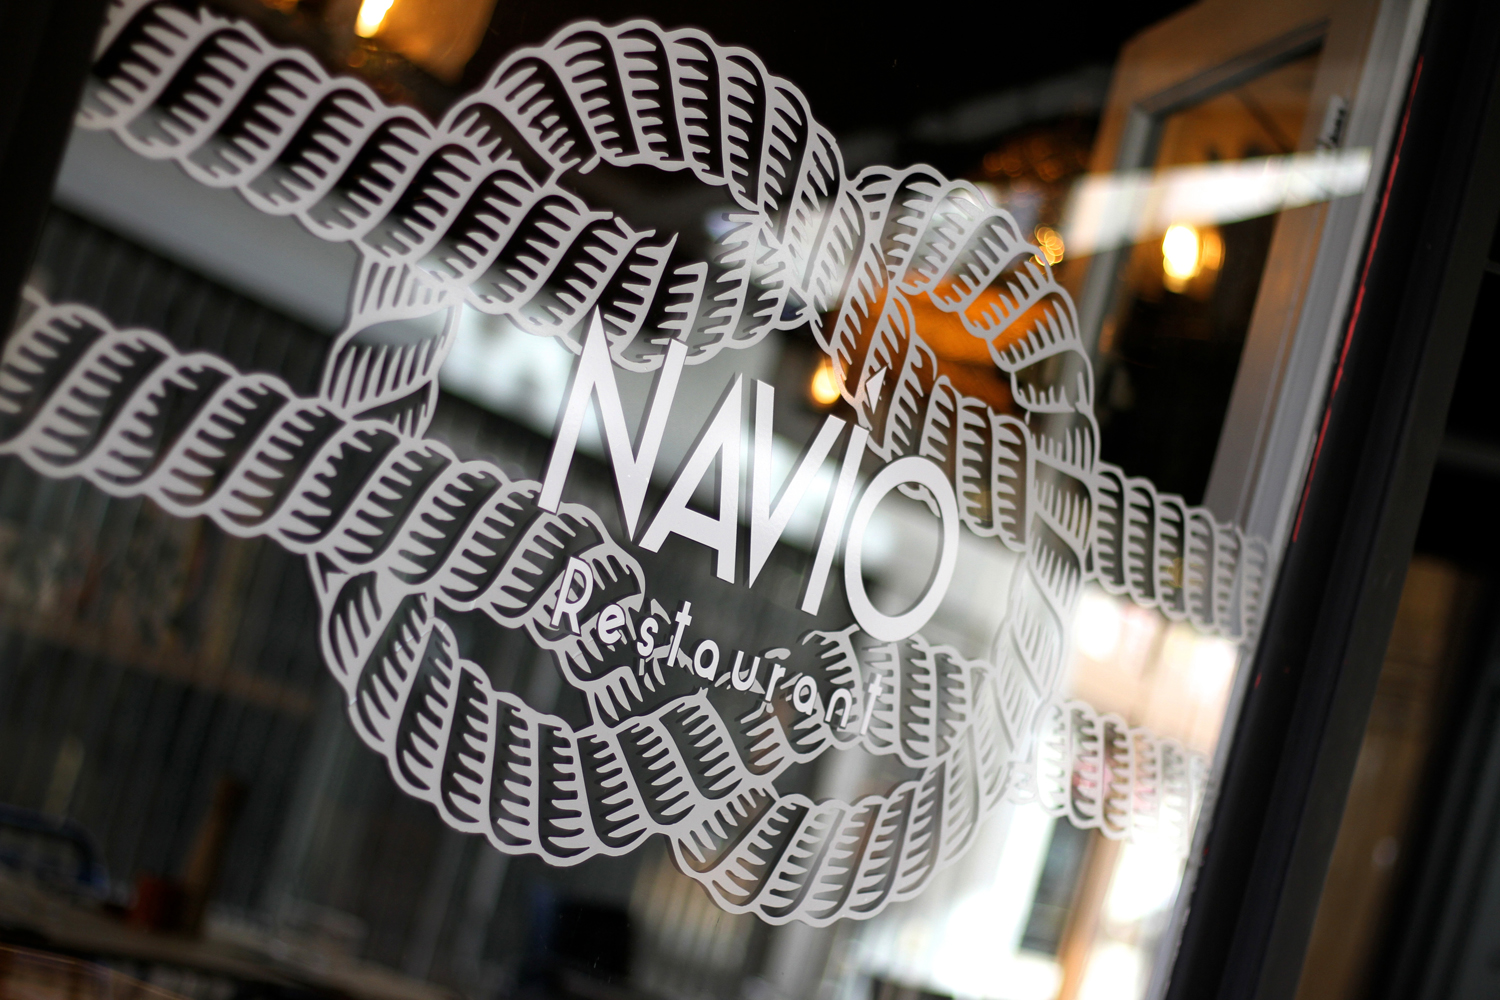 Navio Restaurant, la Nouvelle Adresse